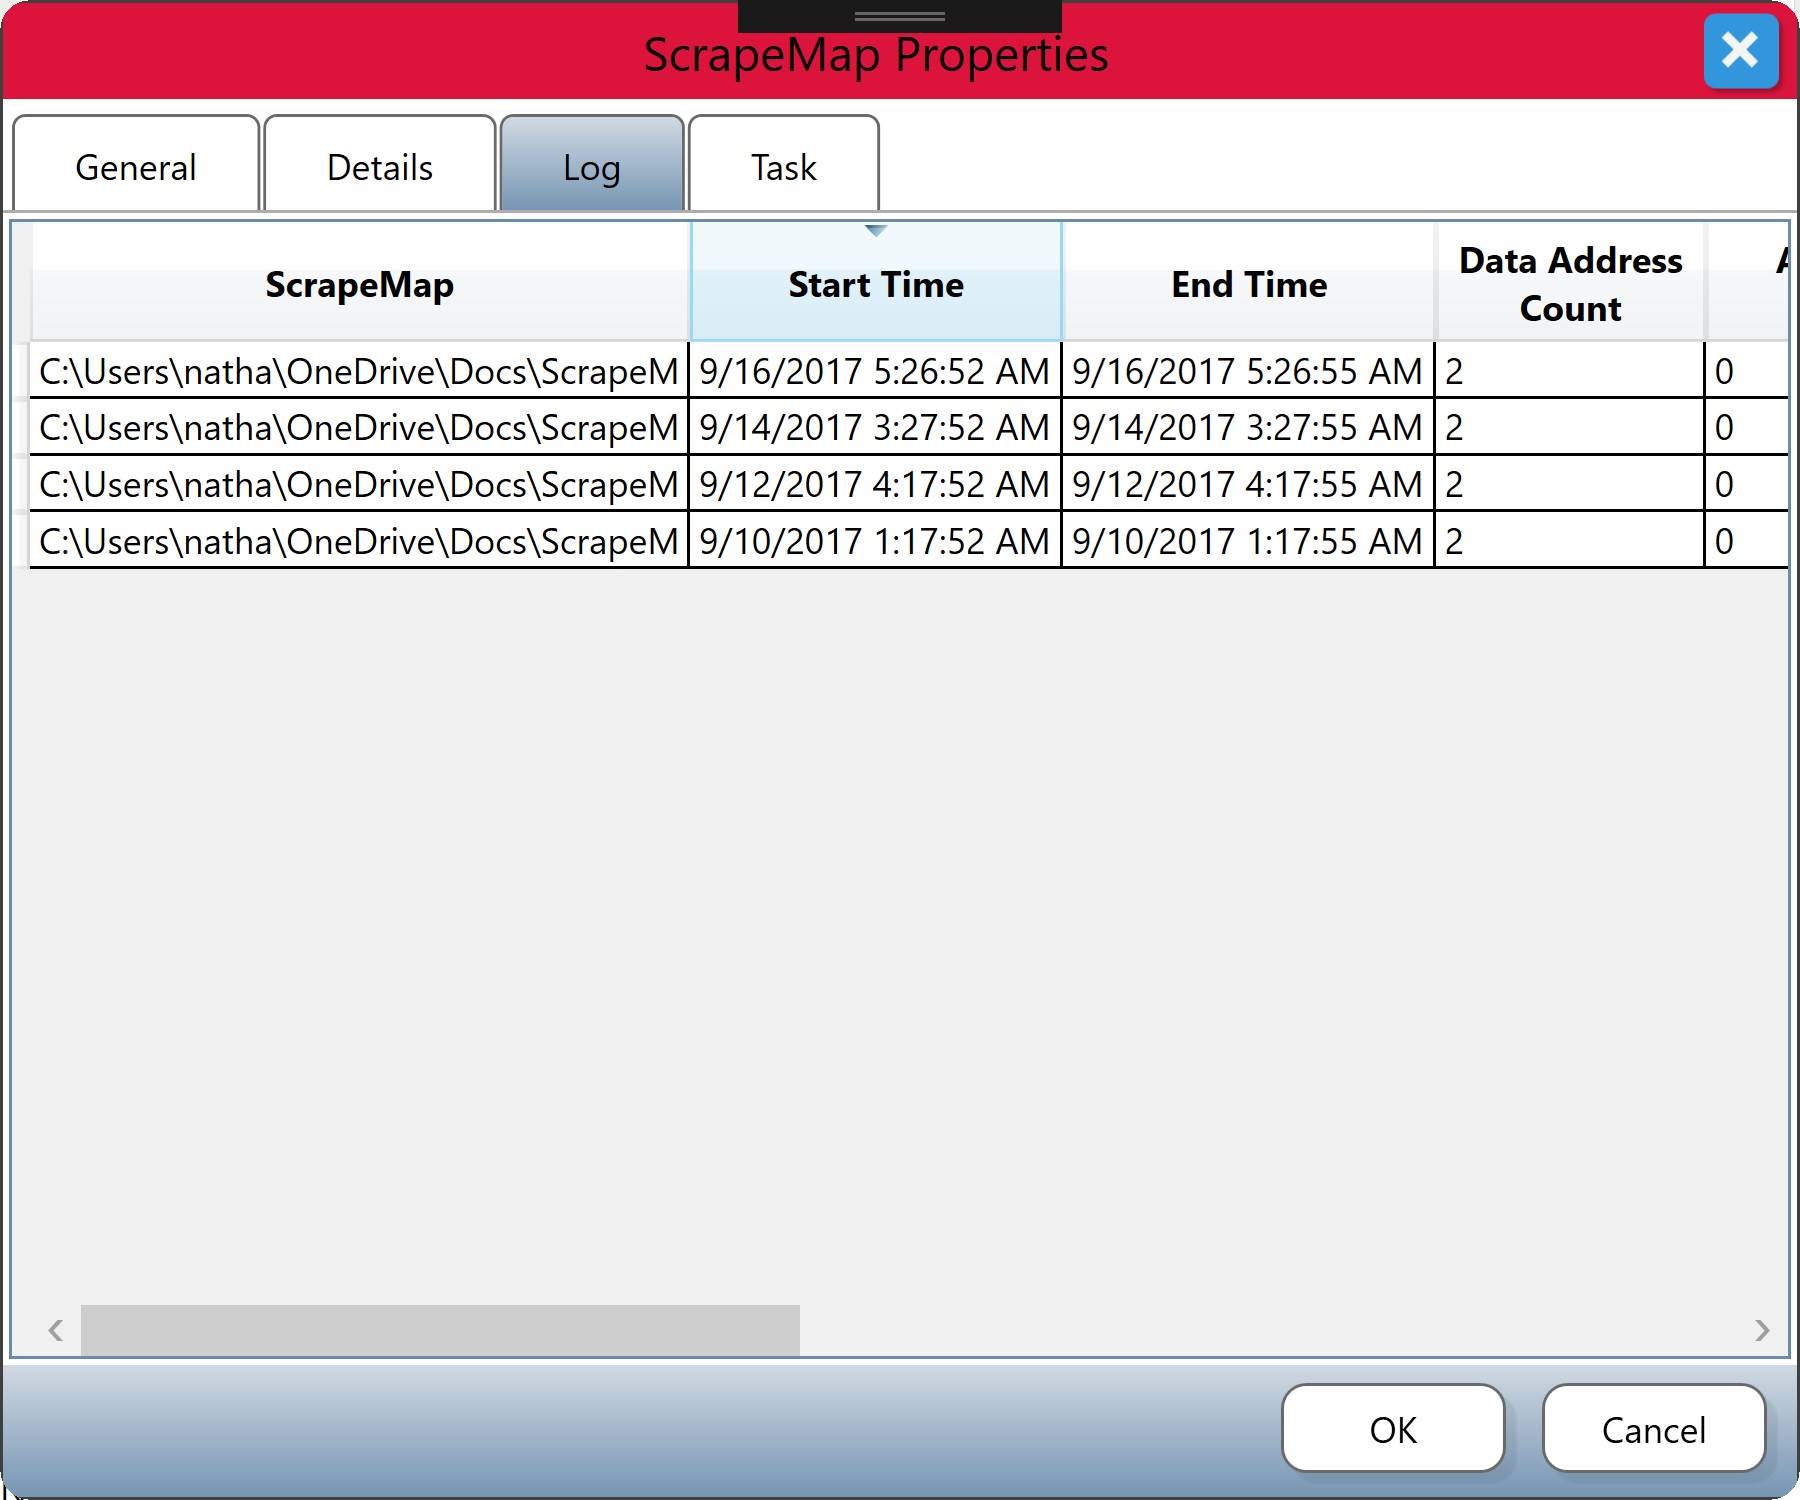 ScrapeMap Properties Dialog with Log tab selected